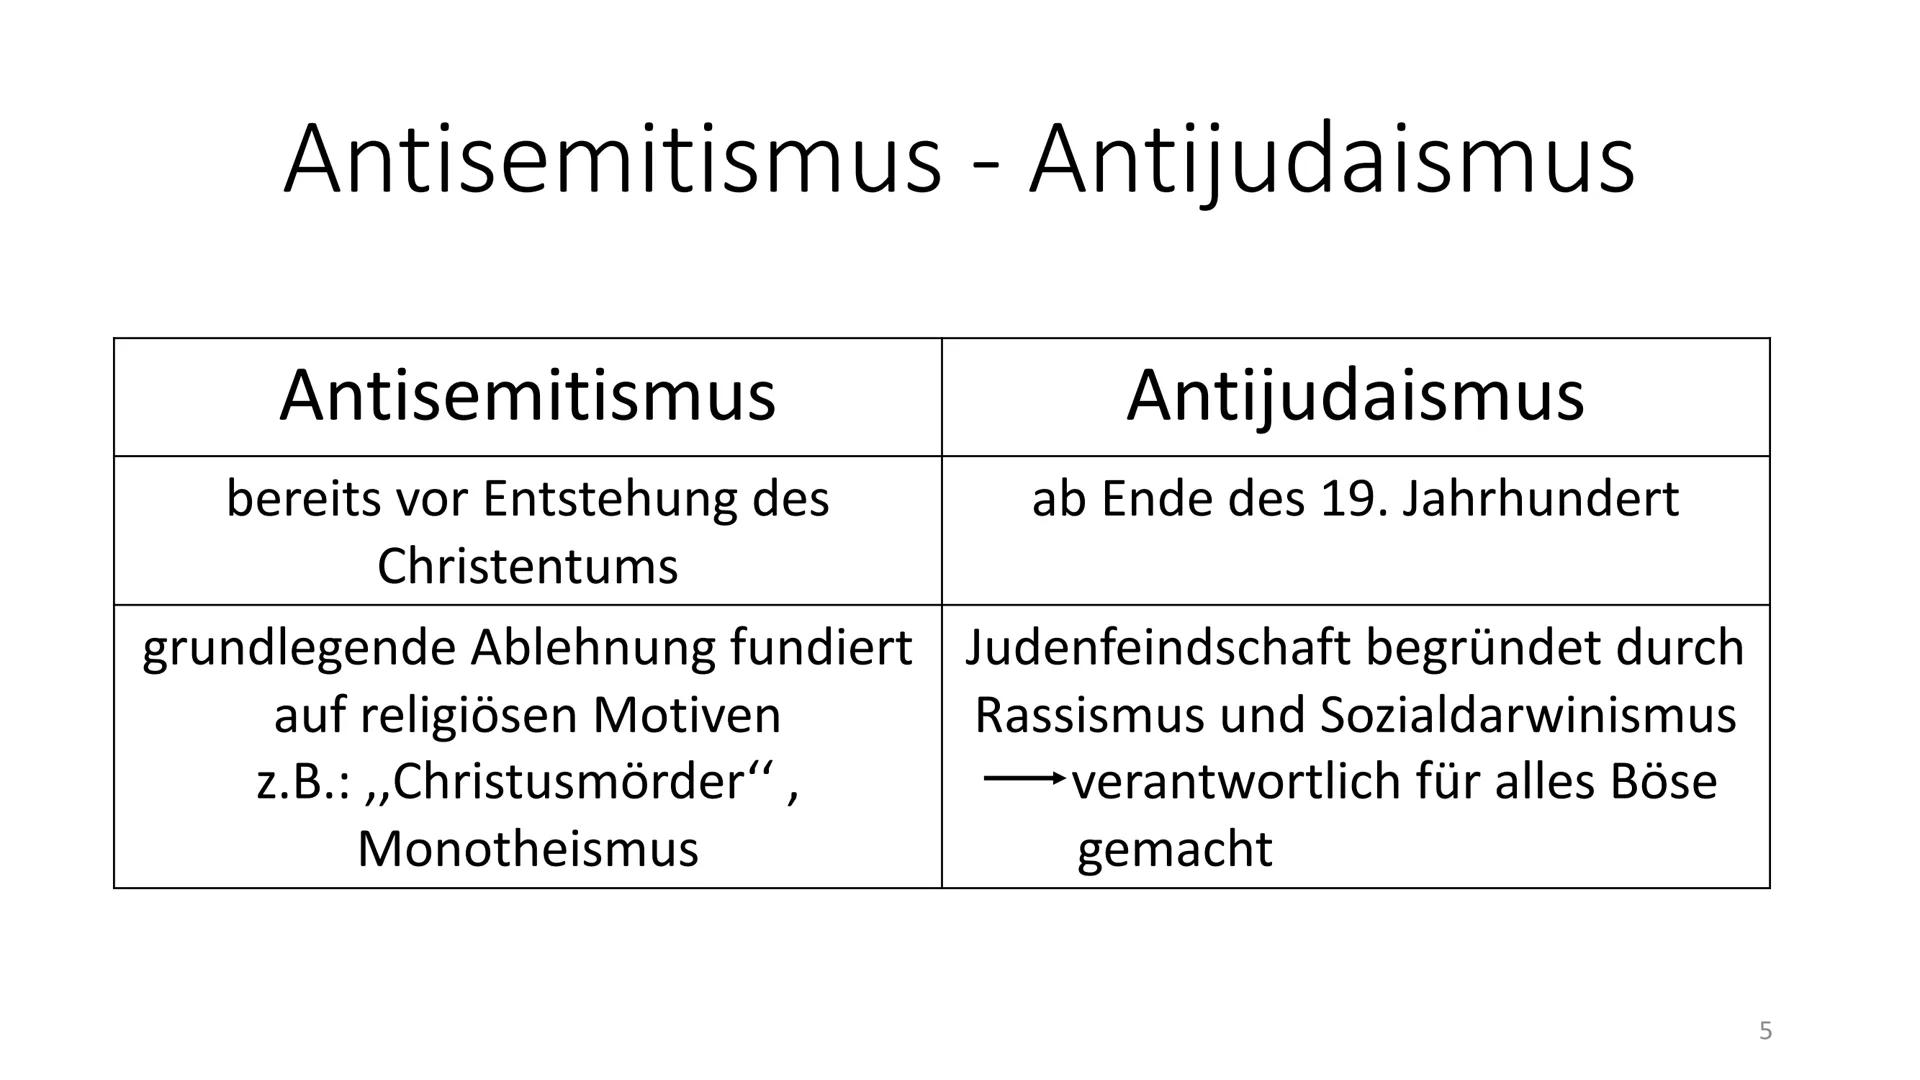 Antisemitismus
-
Hitlers rassistischer Antisemitismus - Definition und Allgemeines
Def.: Antisemitismus beschreibt die durch
Nationalismus, 